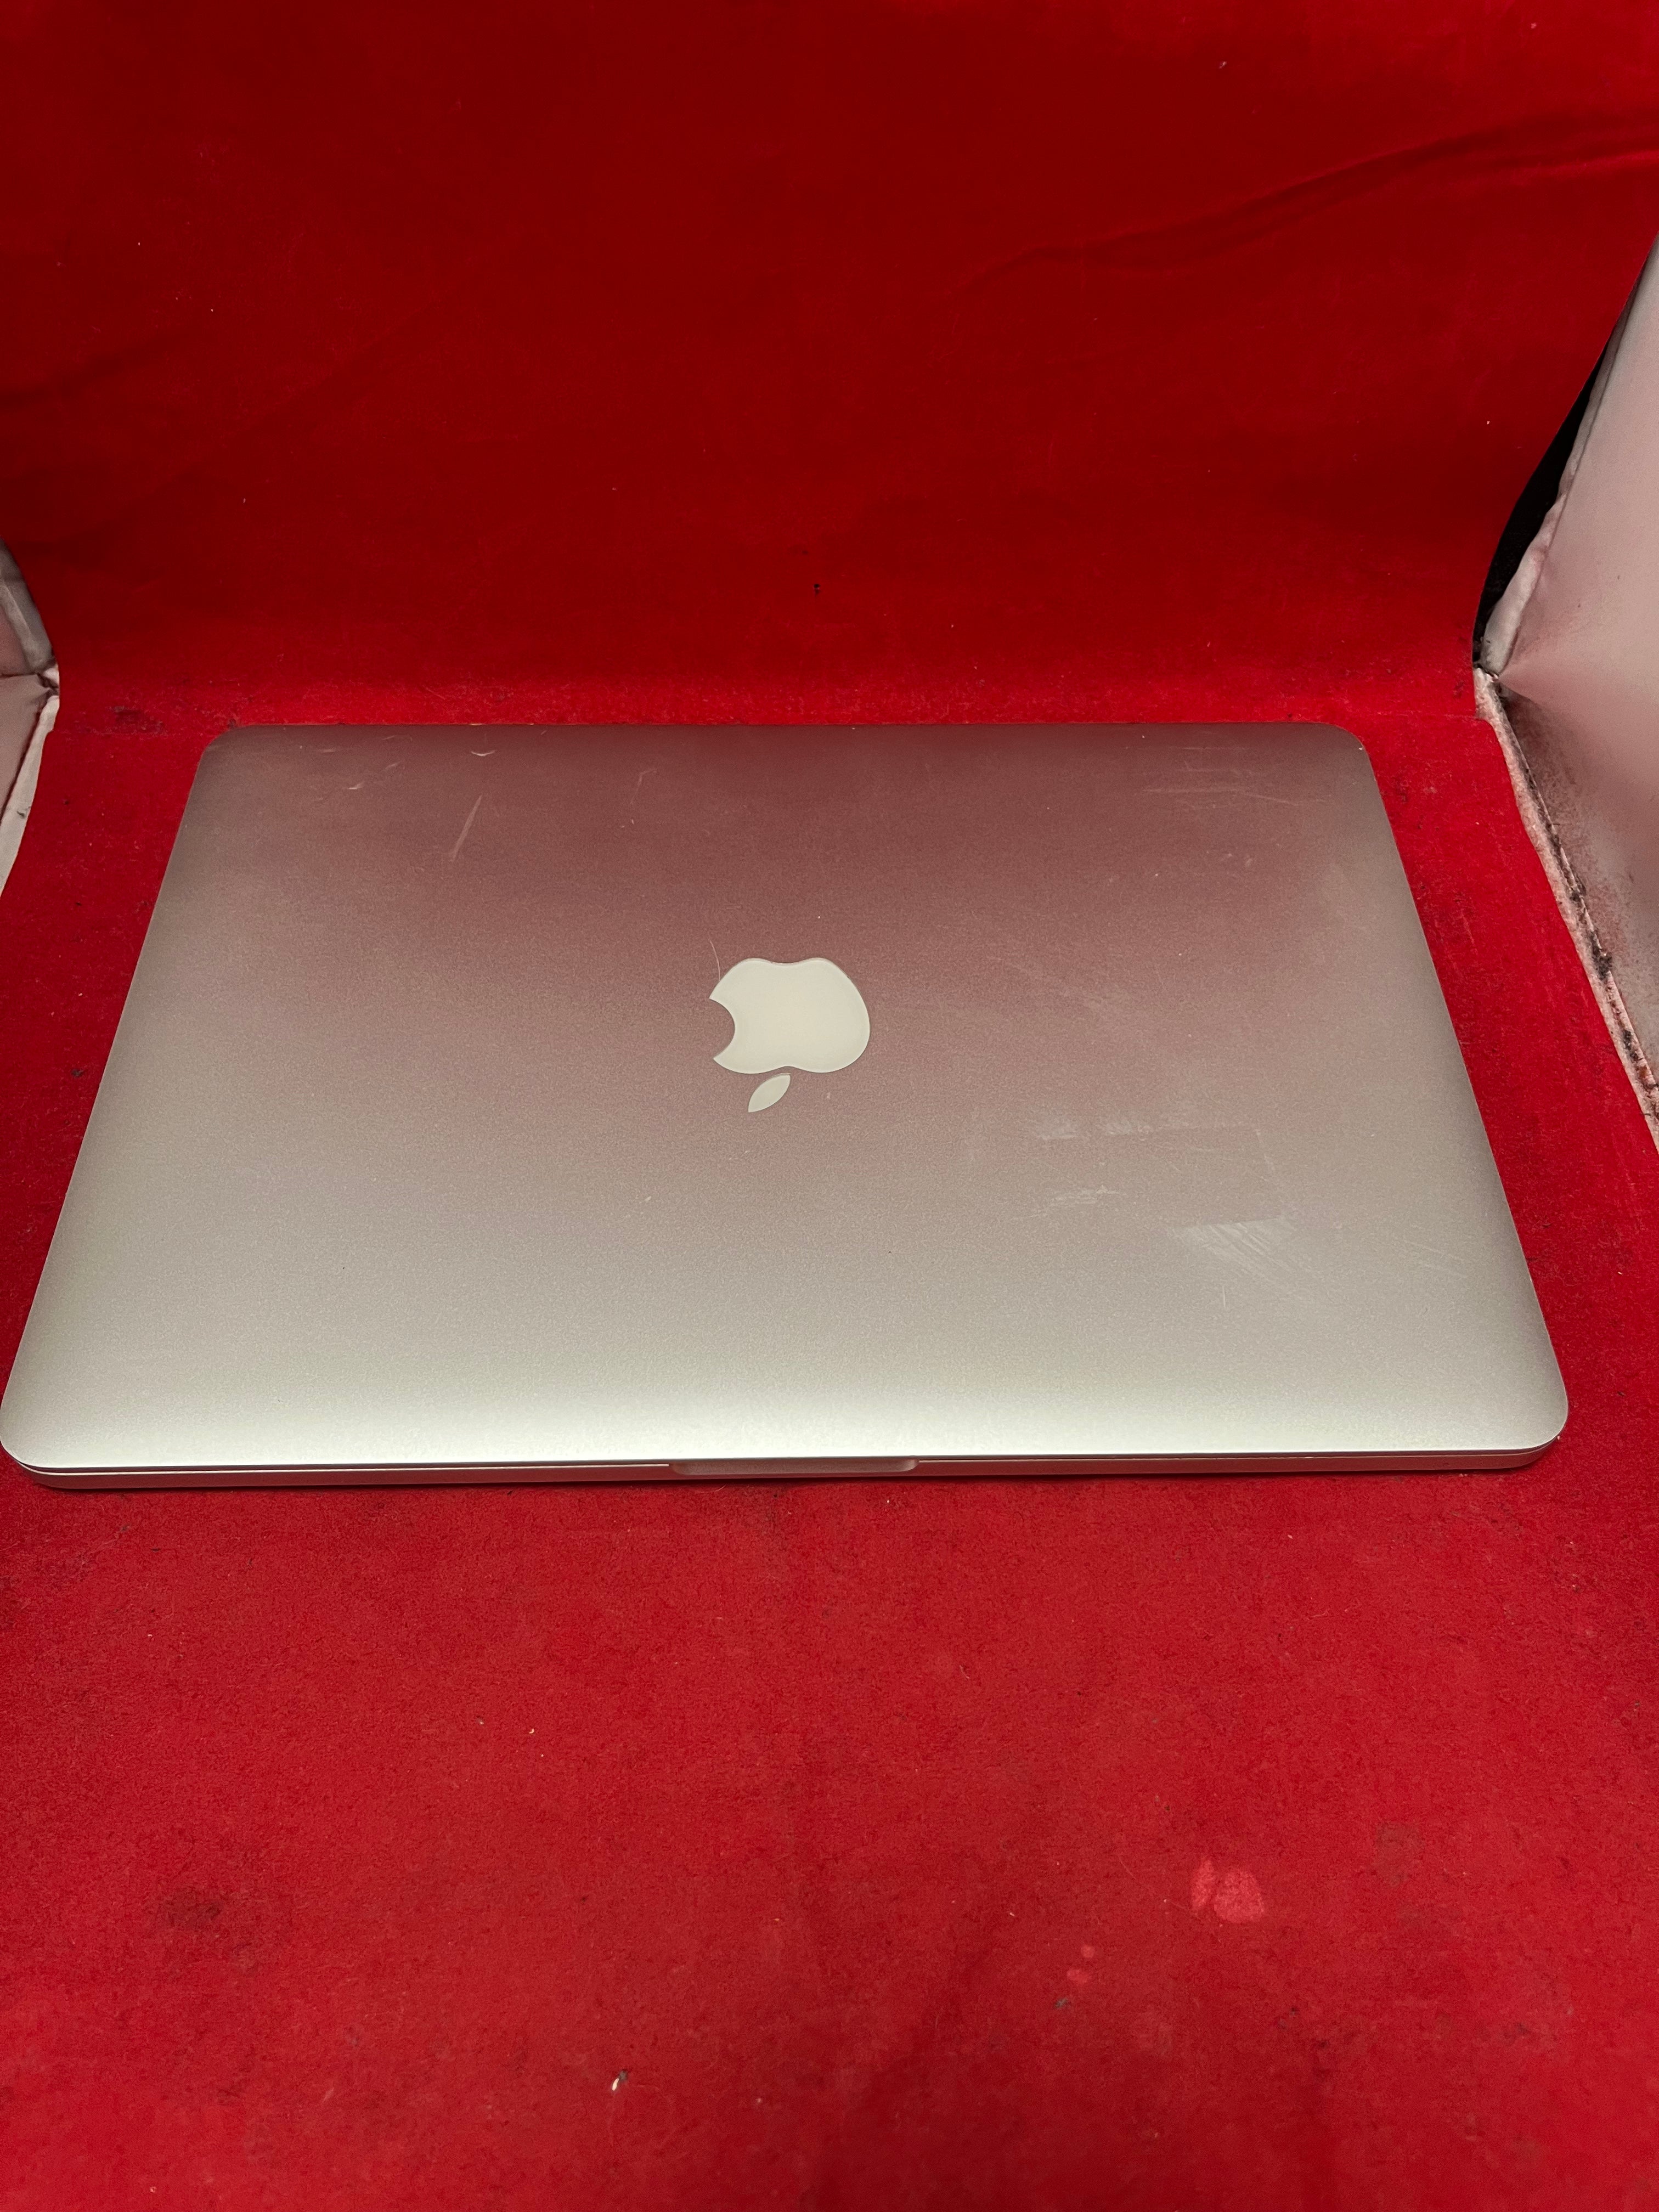 MacBook Pro - Money Maker 